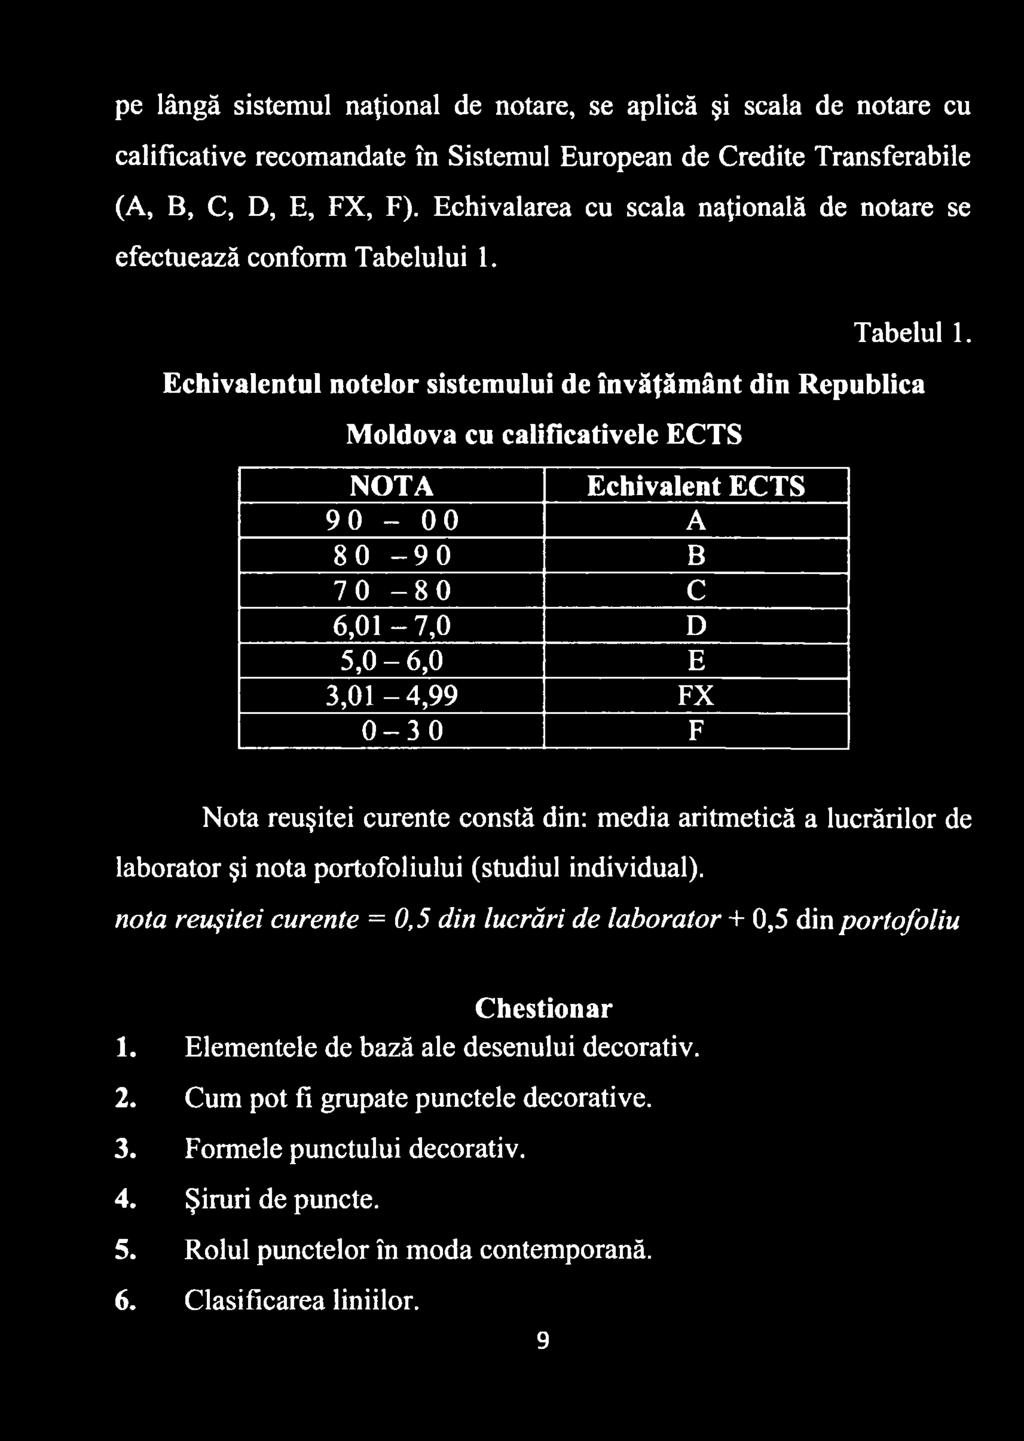 Echivalentul notelor sistemului de învăţământ din Republica \o 0 1 Moldova cu calificativele ECTS NOTA o o 00 0 1 NO o o 0 1 00 o Echivalent ECTS A B C 6,0 1-7,0 D 5,0-6,0 E 3,01-4,99 FX F 0 1u> o